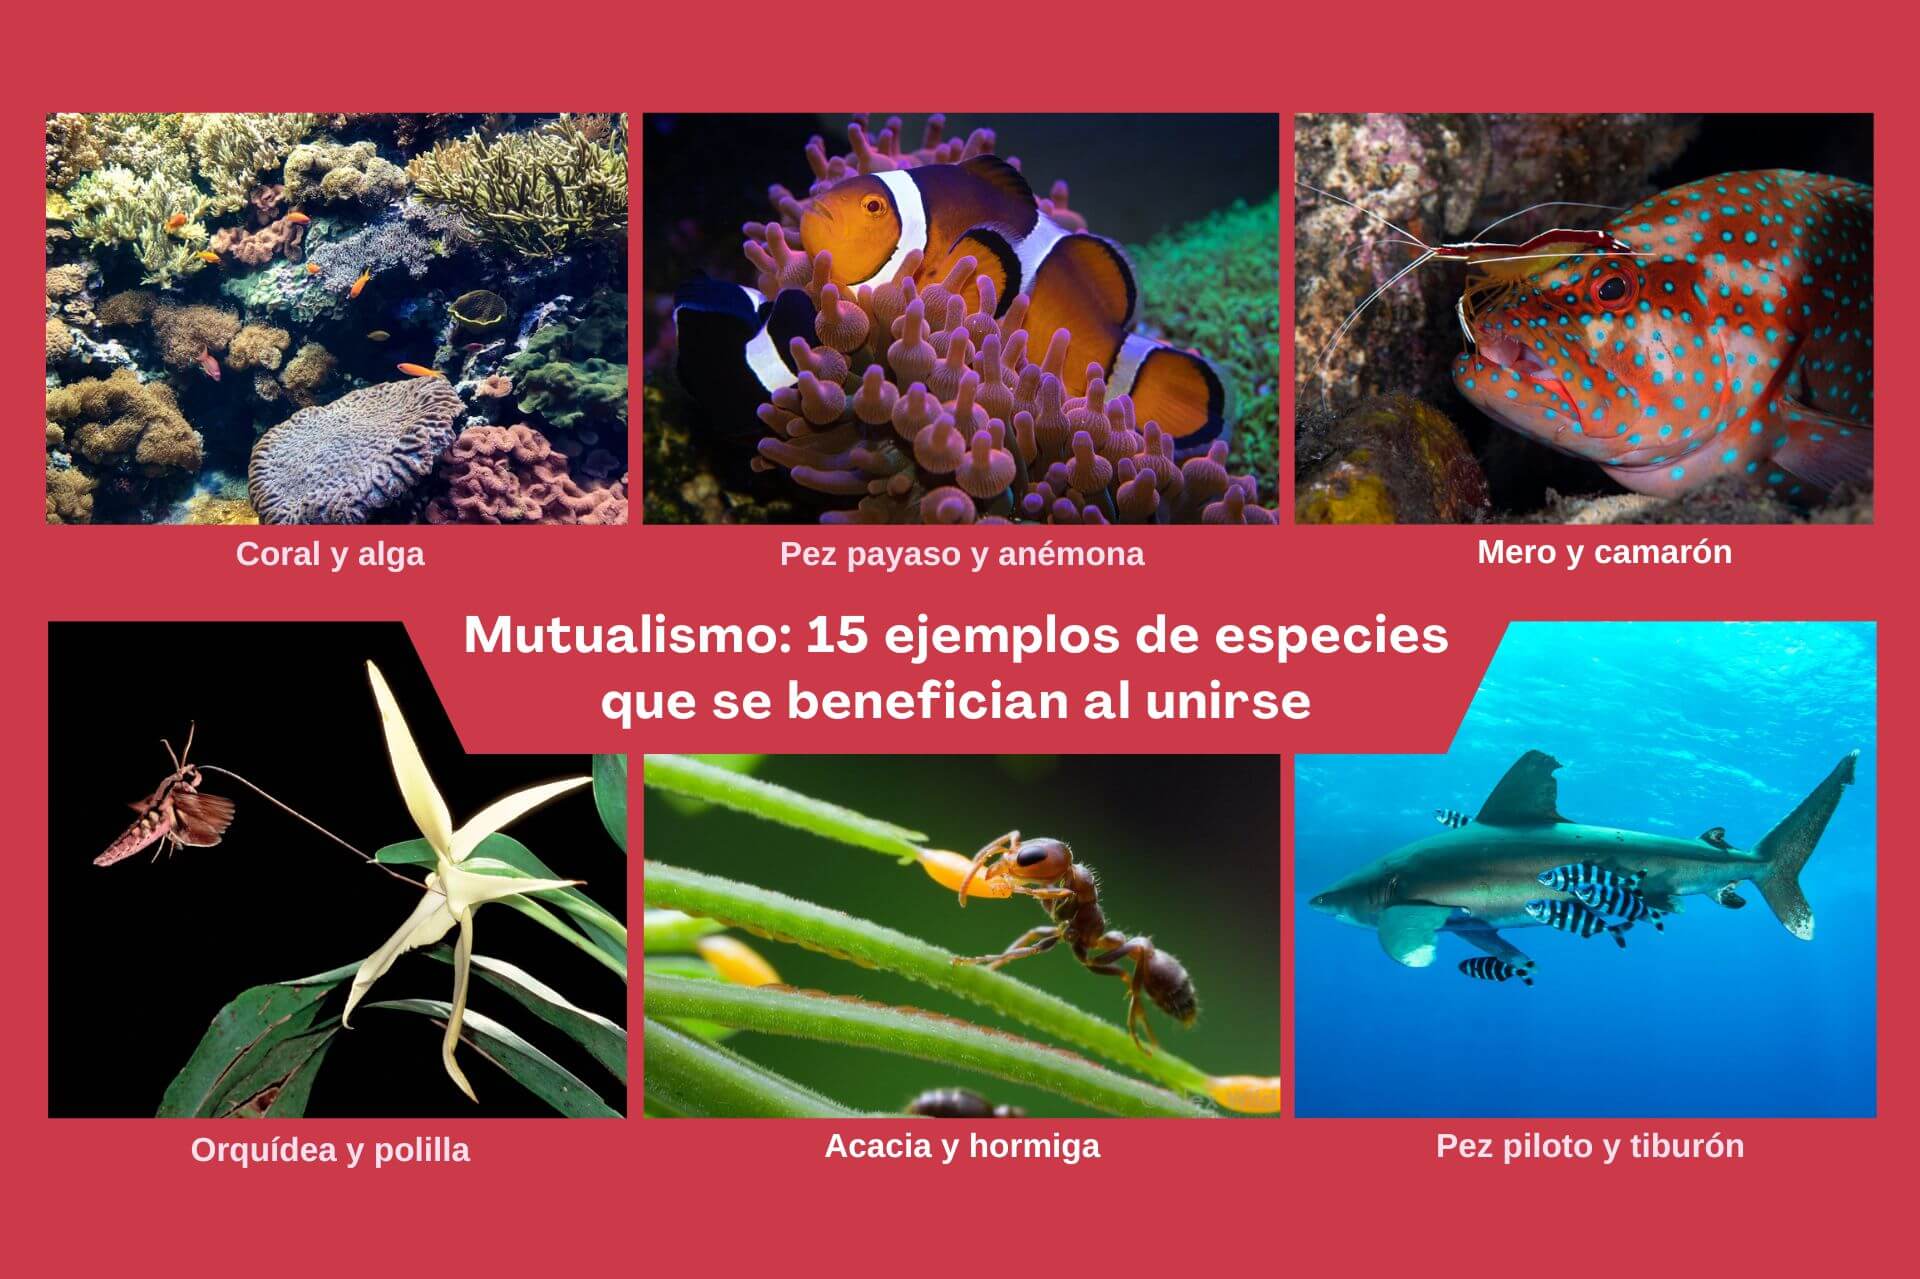 Mutualismo: 15 ejemplos de especies que se benefician al unirse